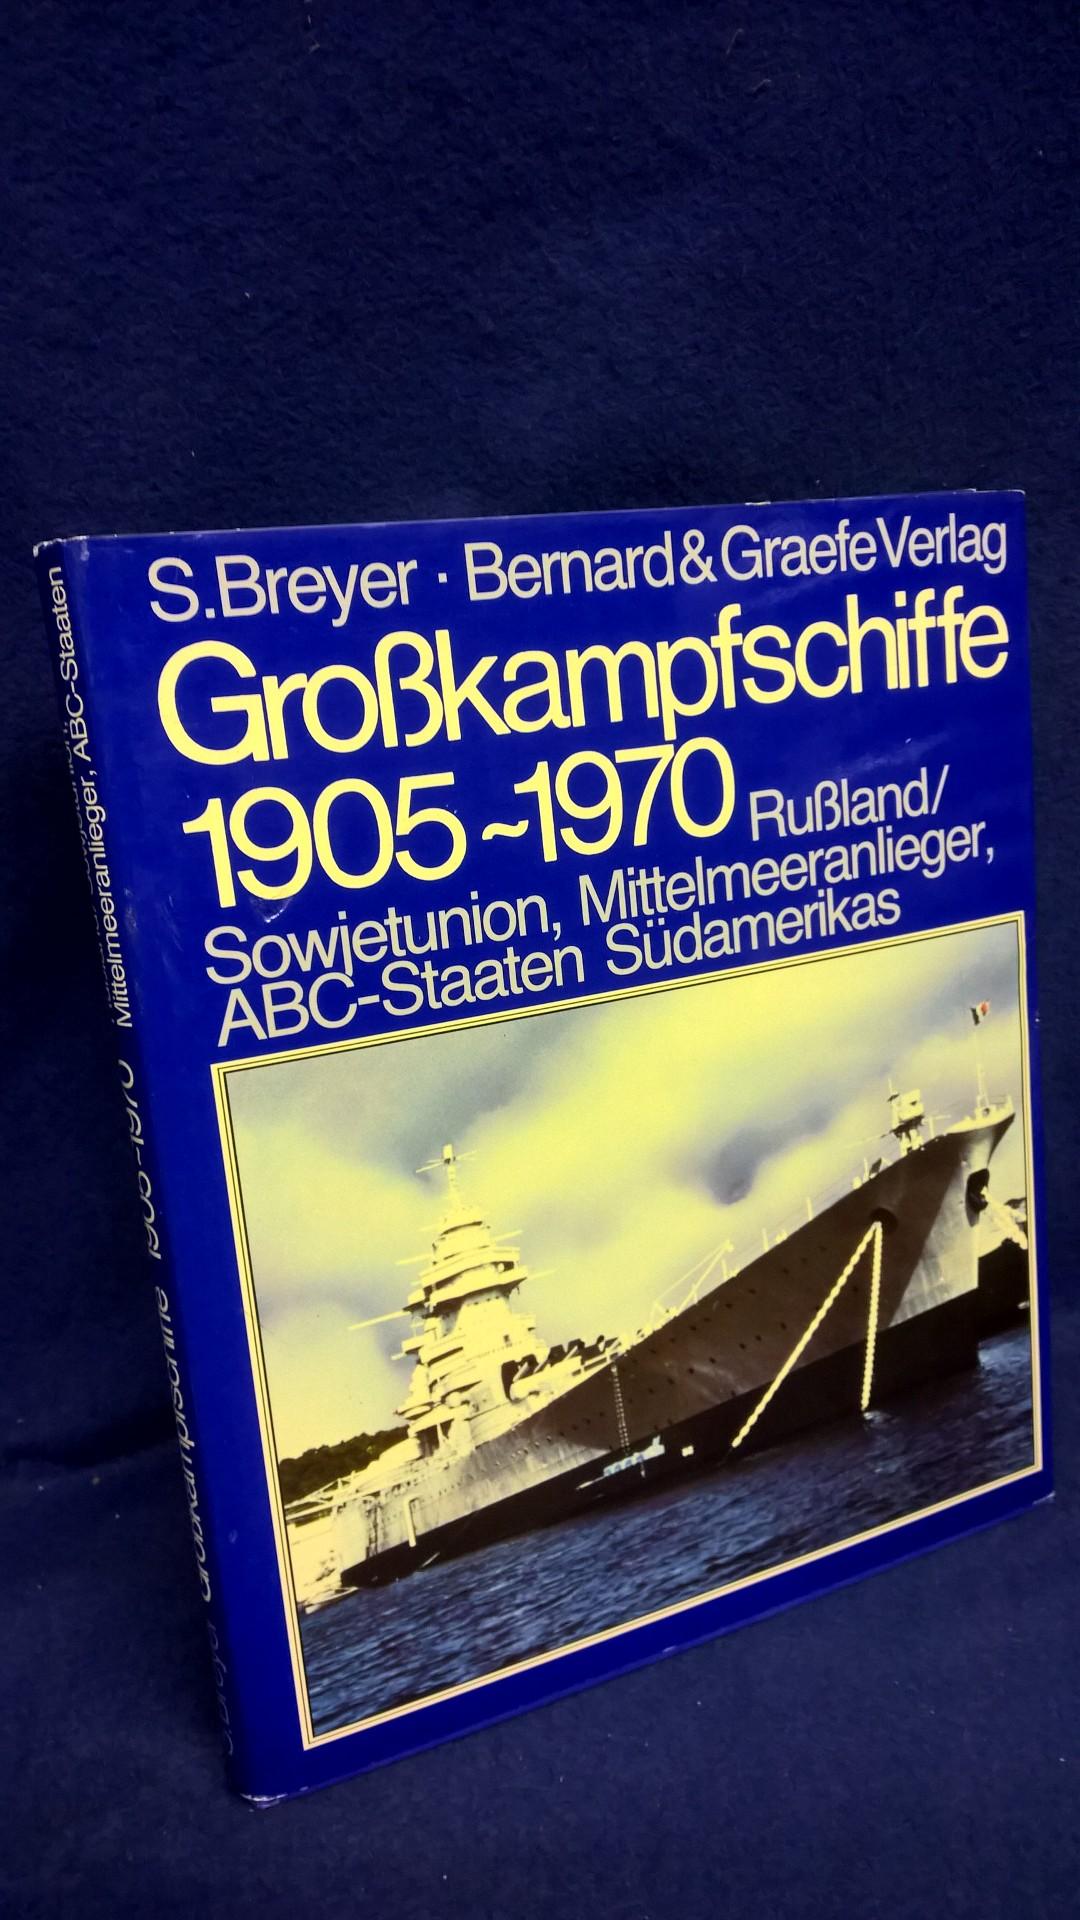 Grosskampfschiffe 1905-1970. Wehrtechnik im Bild Band 3: Rußland/Sowjetunion, Mittelmeeranlieger, ABC-Staaten Südamerikas. 